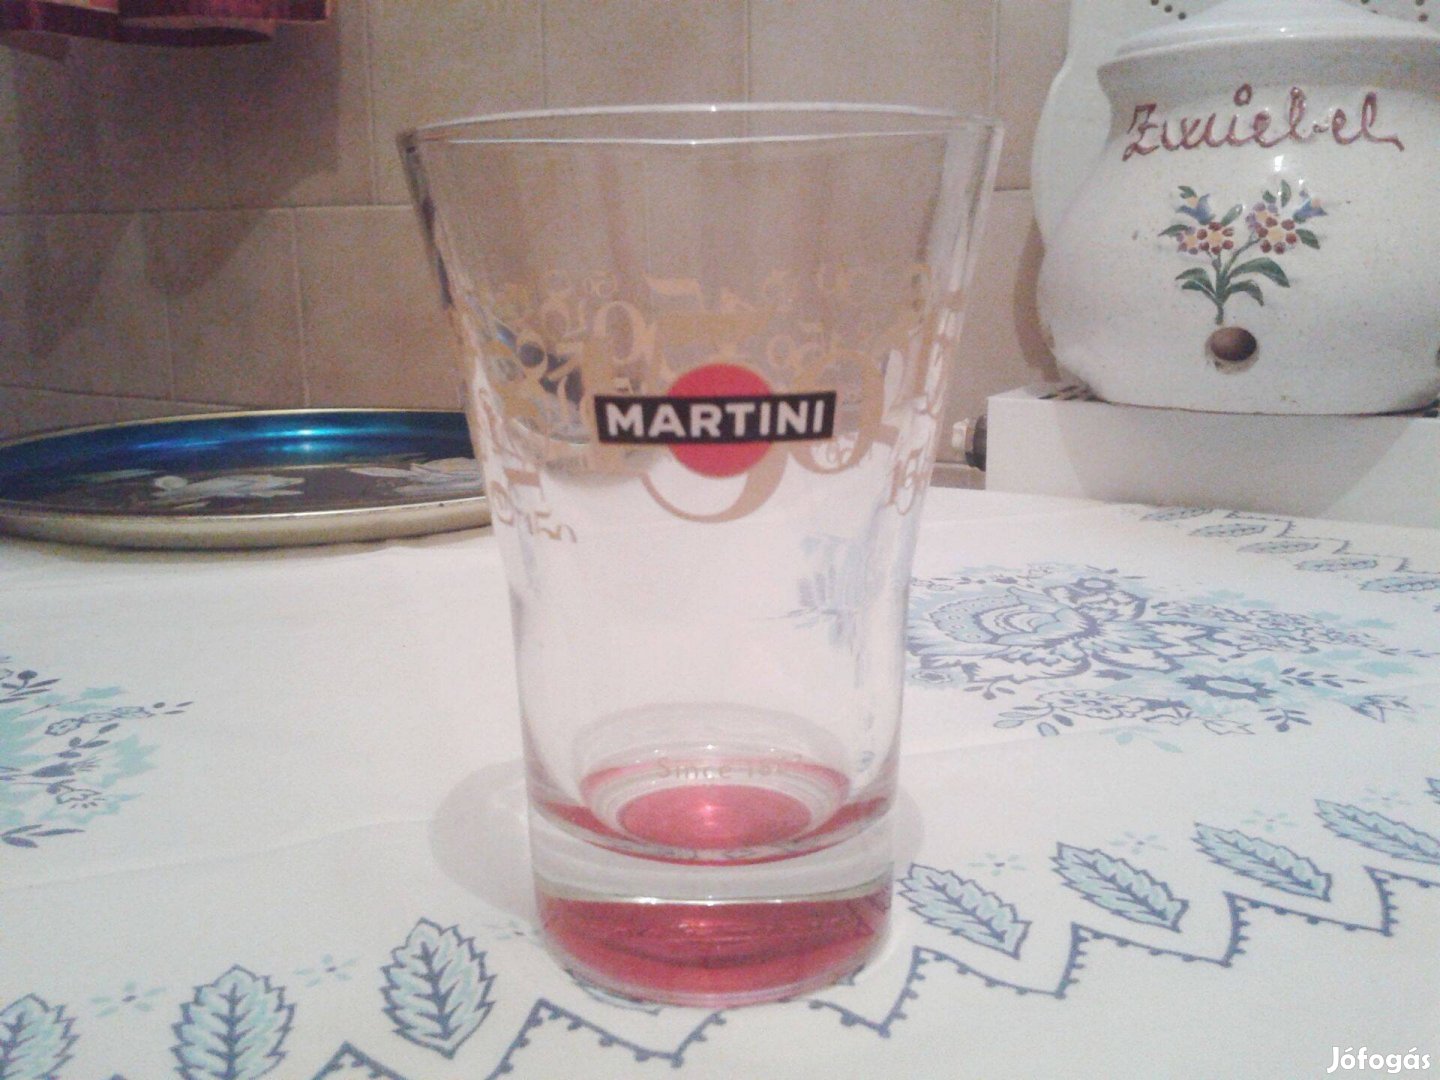 Martini feliratú jubileumi üveg pohár limitált kiadás 4 900 Ft